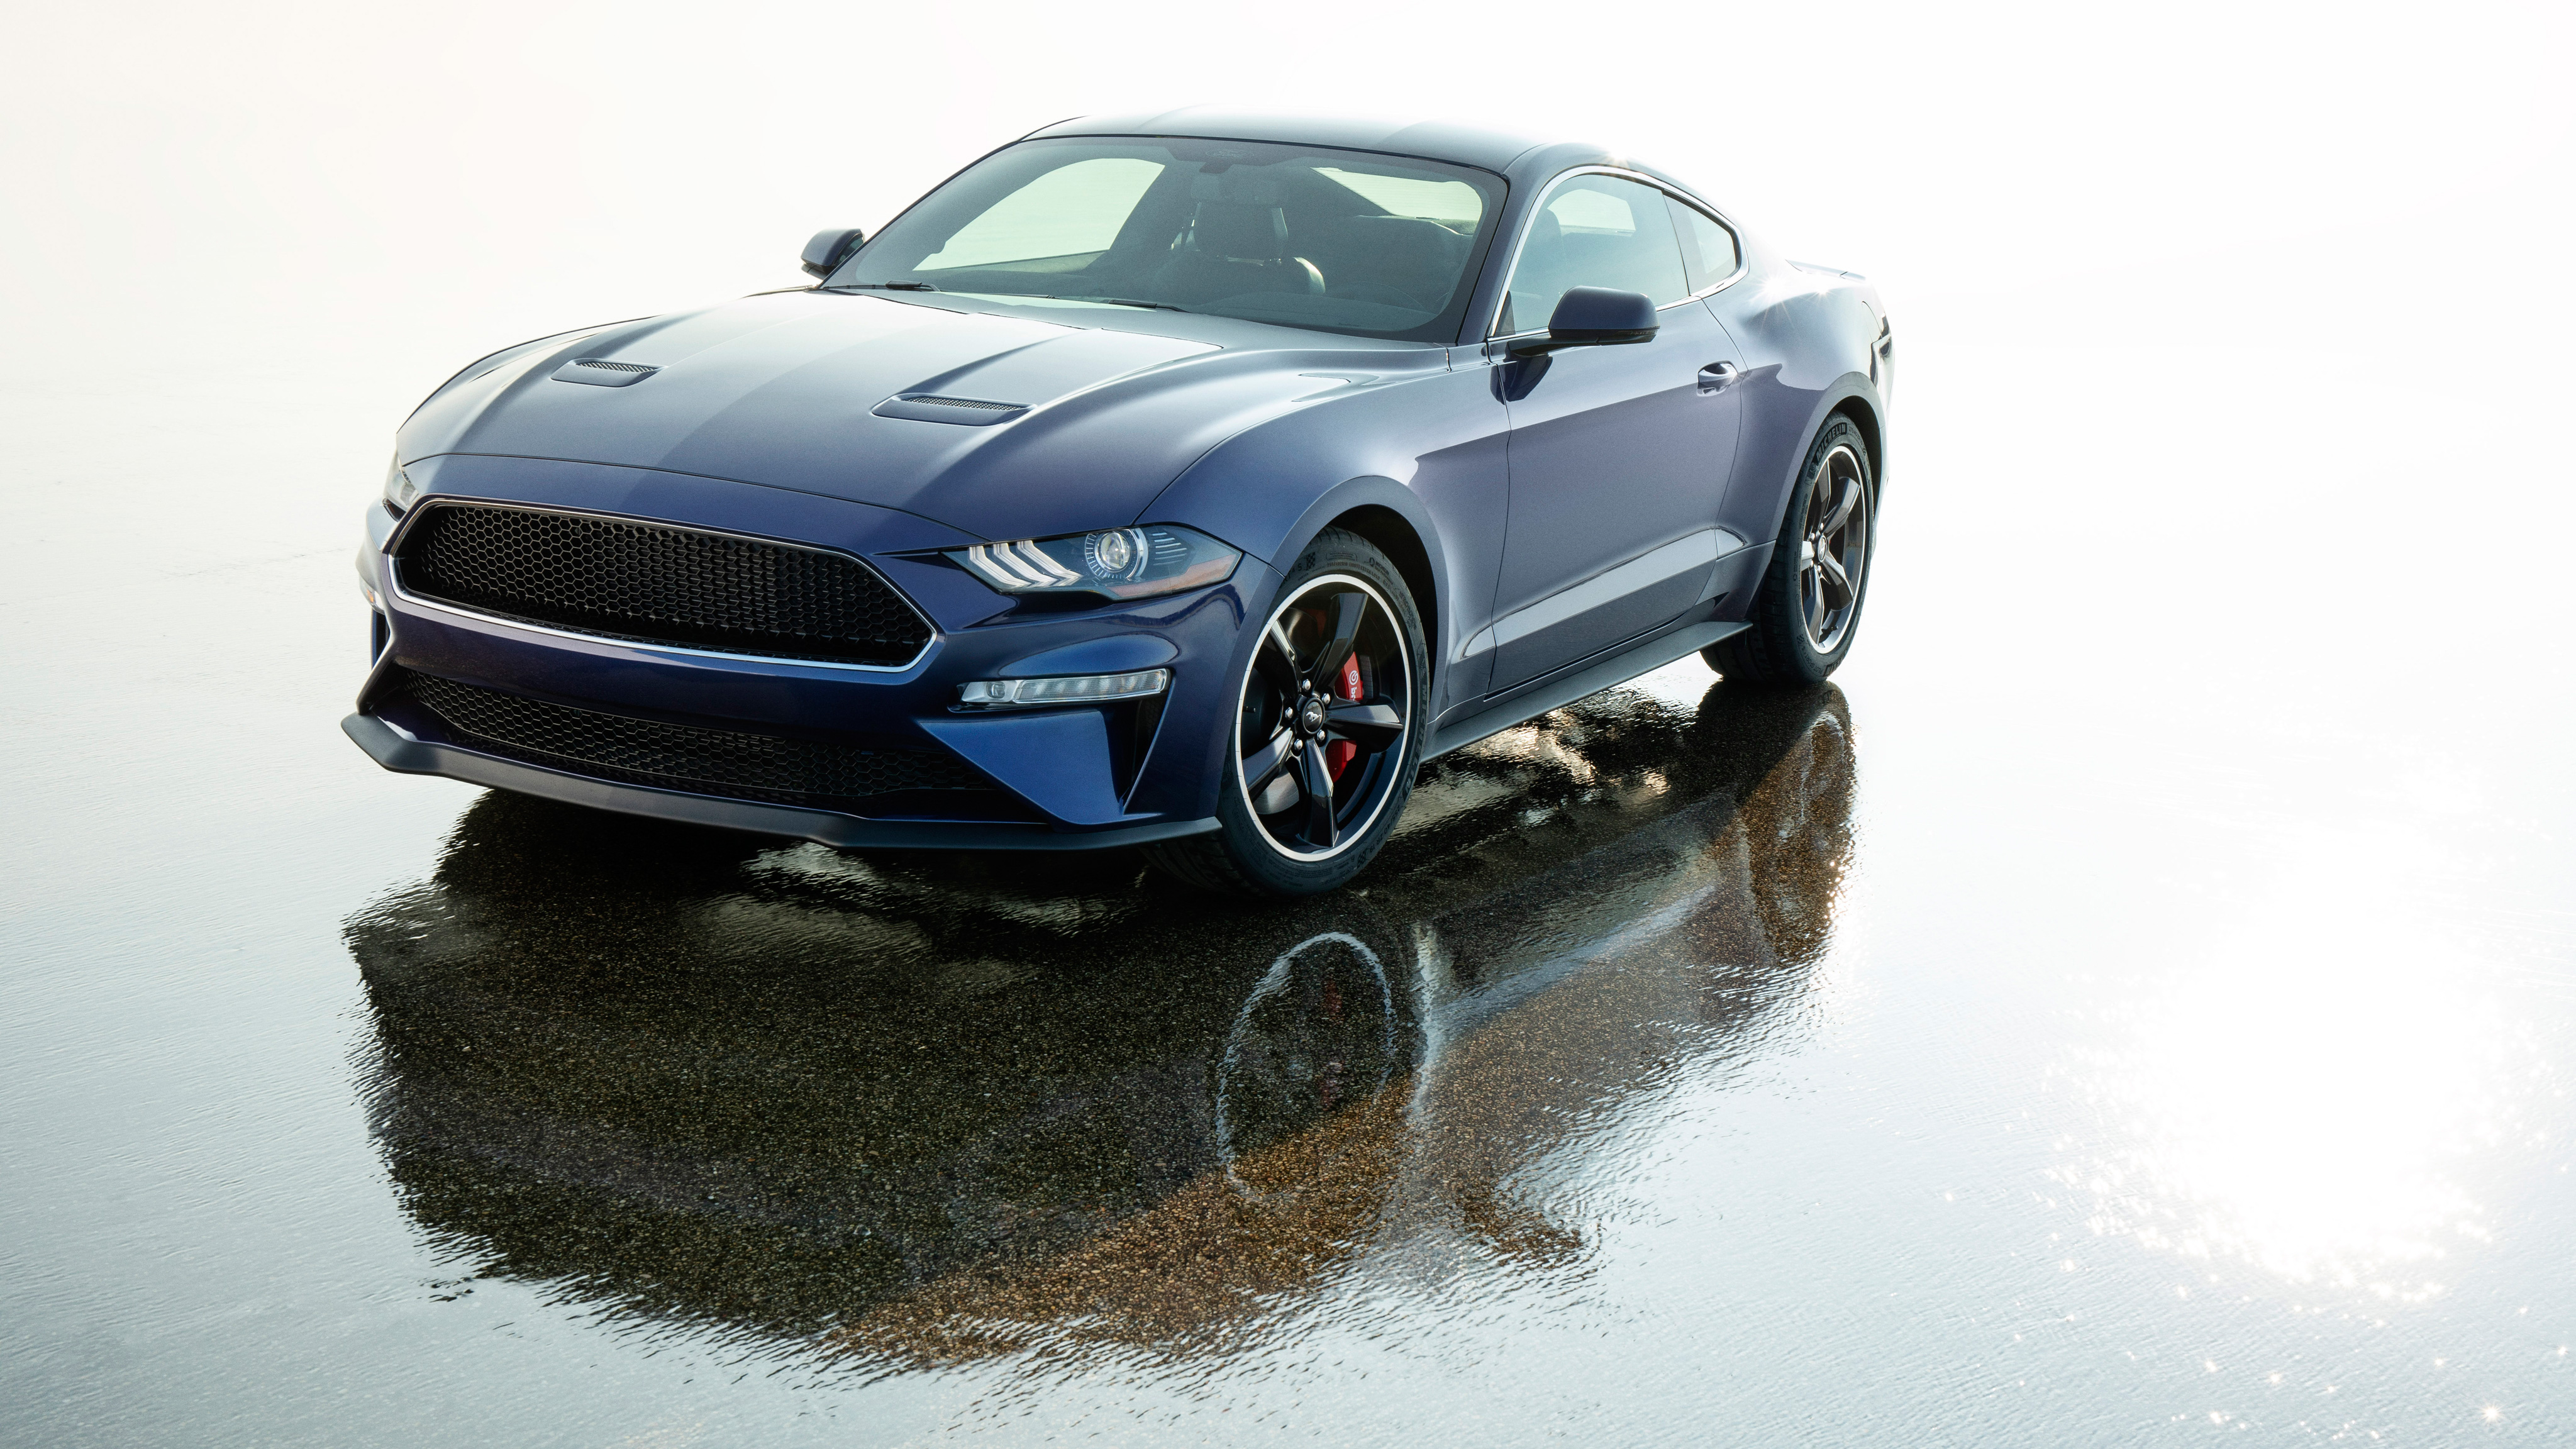 2019 Mustang Gt Blue - HD Wallpaper 